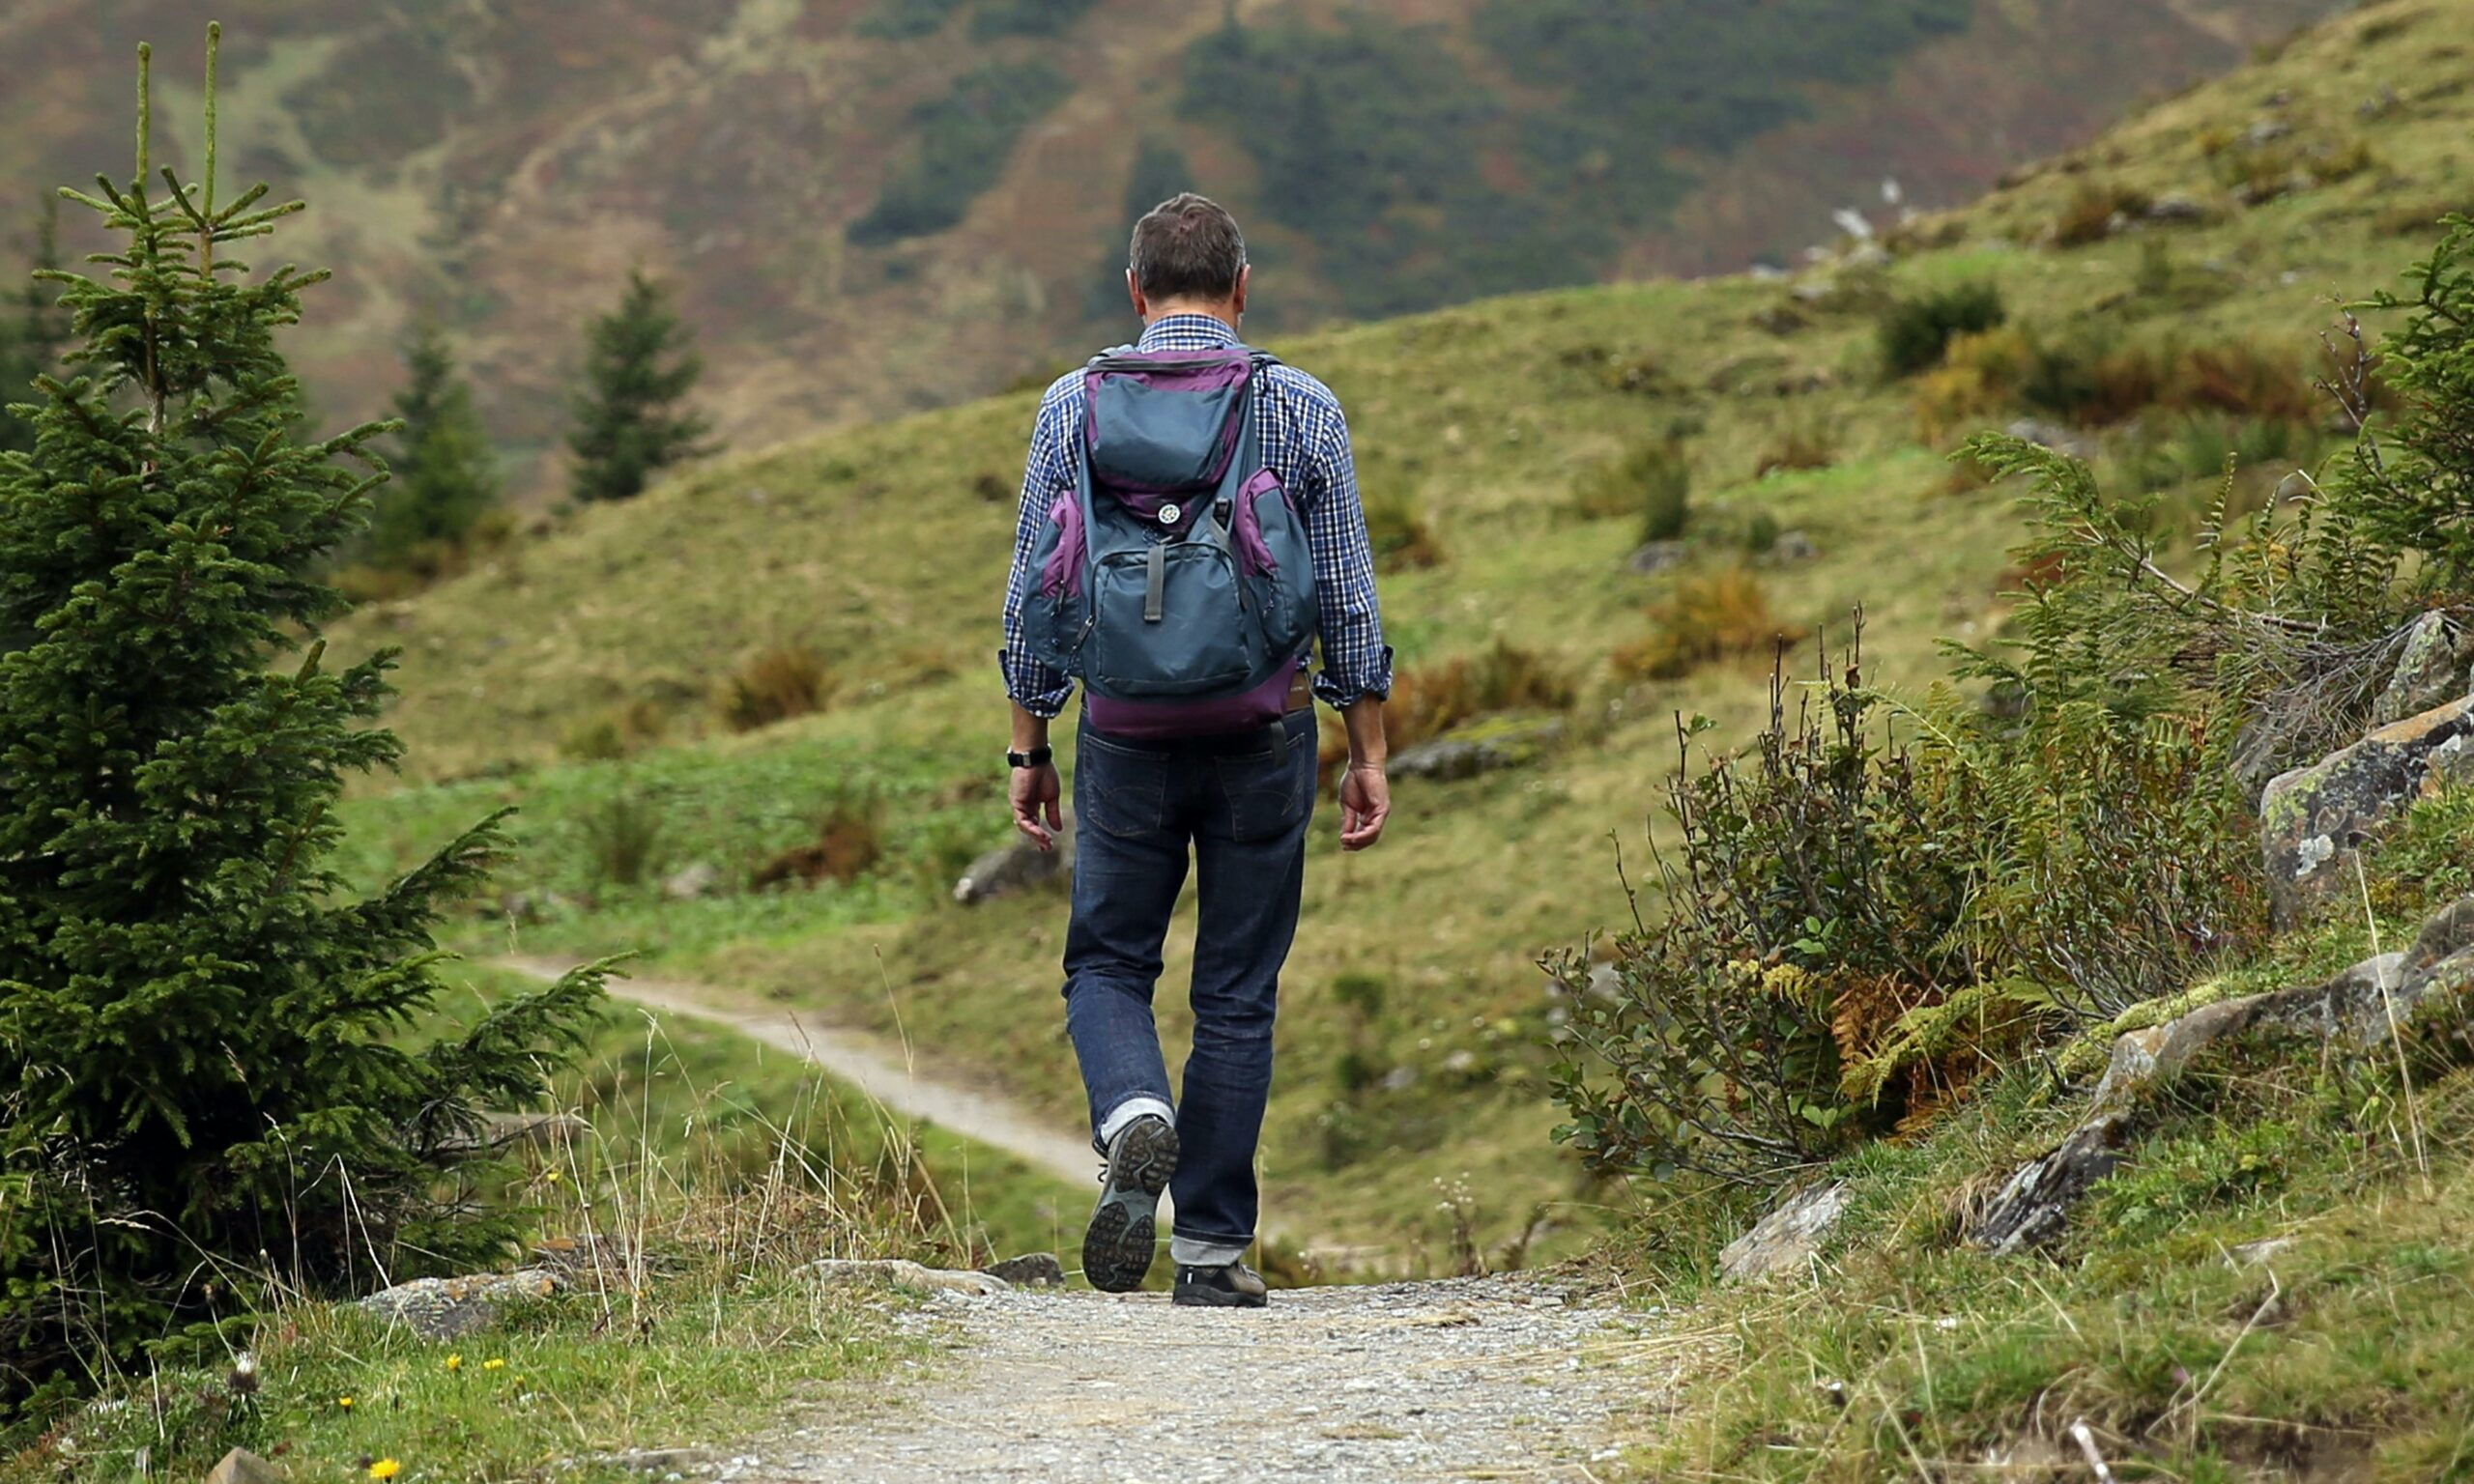 Un randonneur portant un sac à dos bleu et violet marche sur un sentier de montagne verdoyant, entouré de petits sapins et d'arbustes.